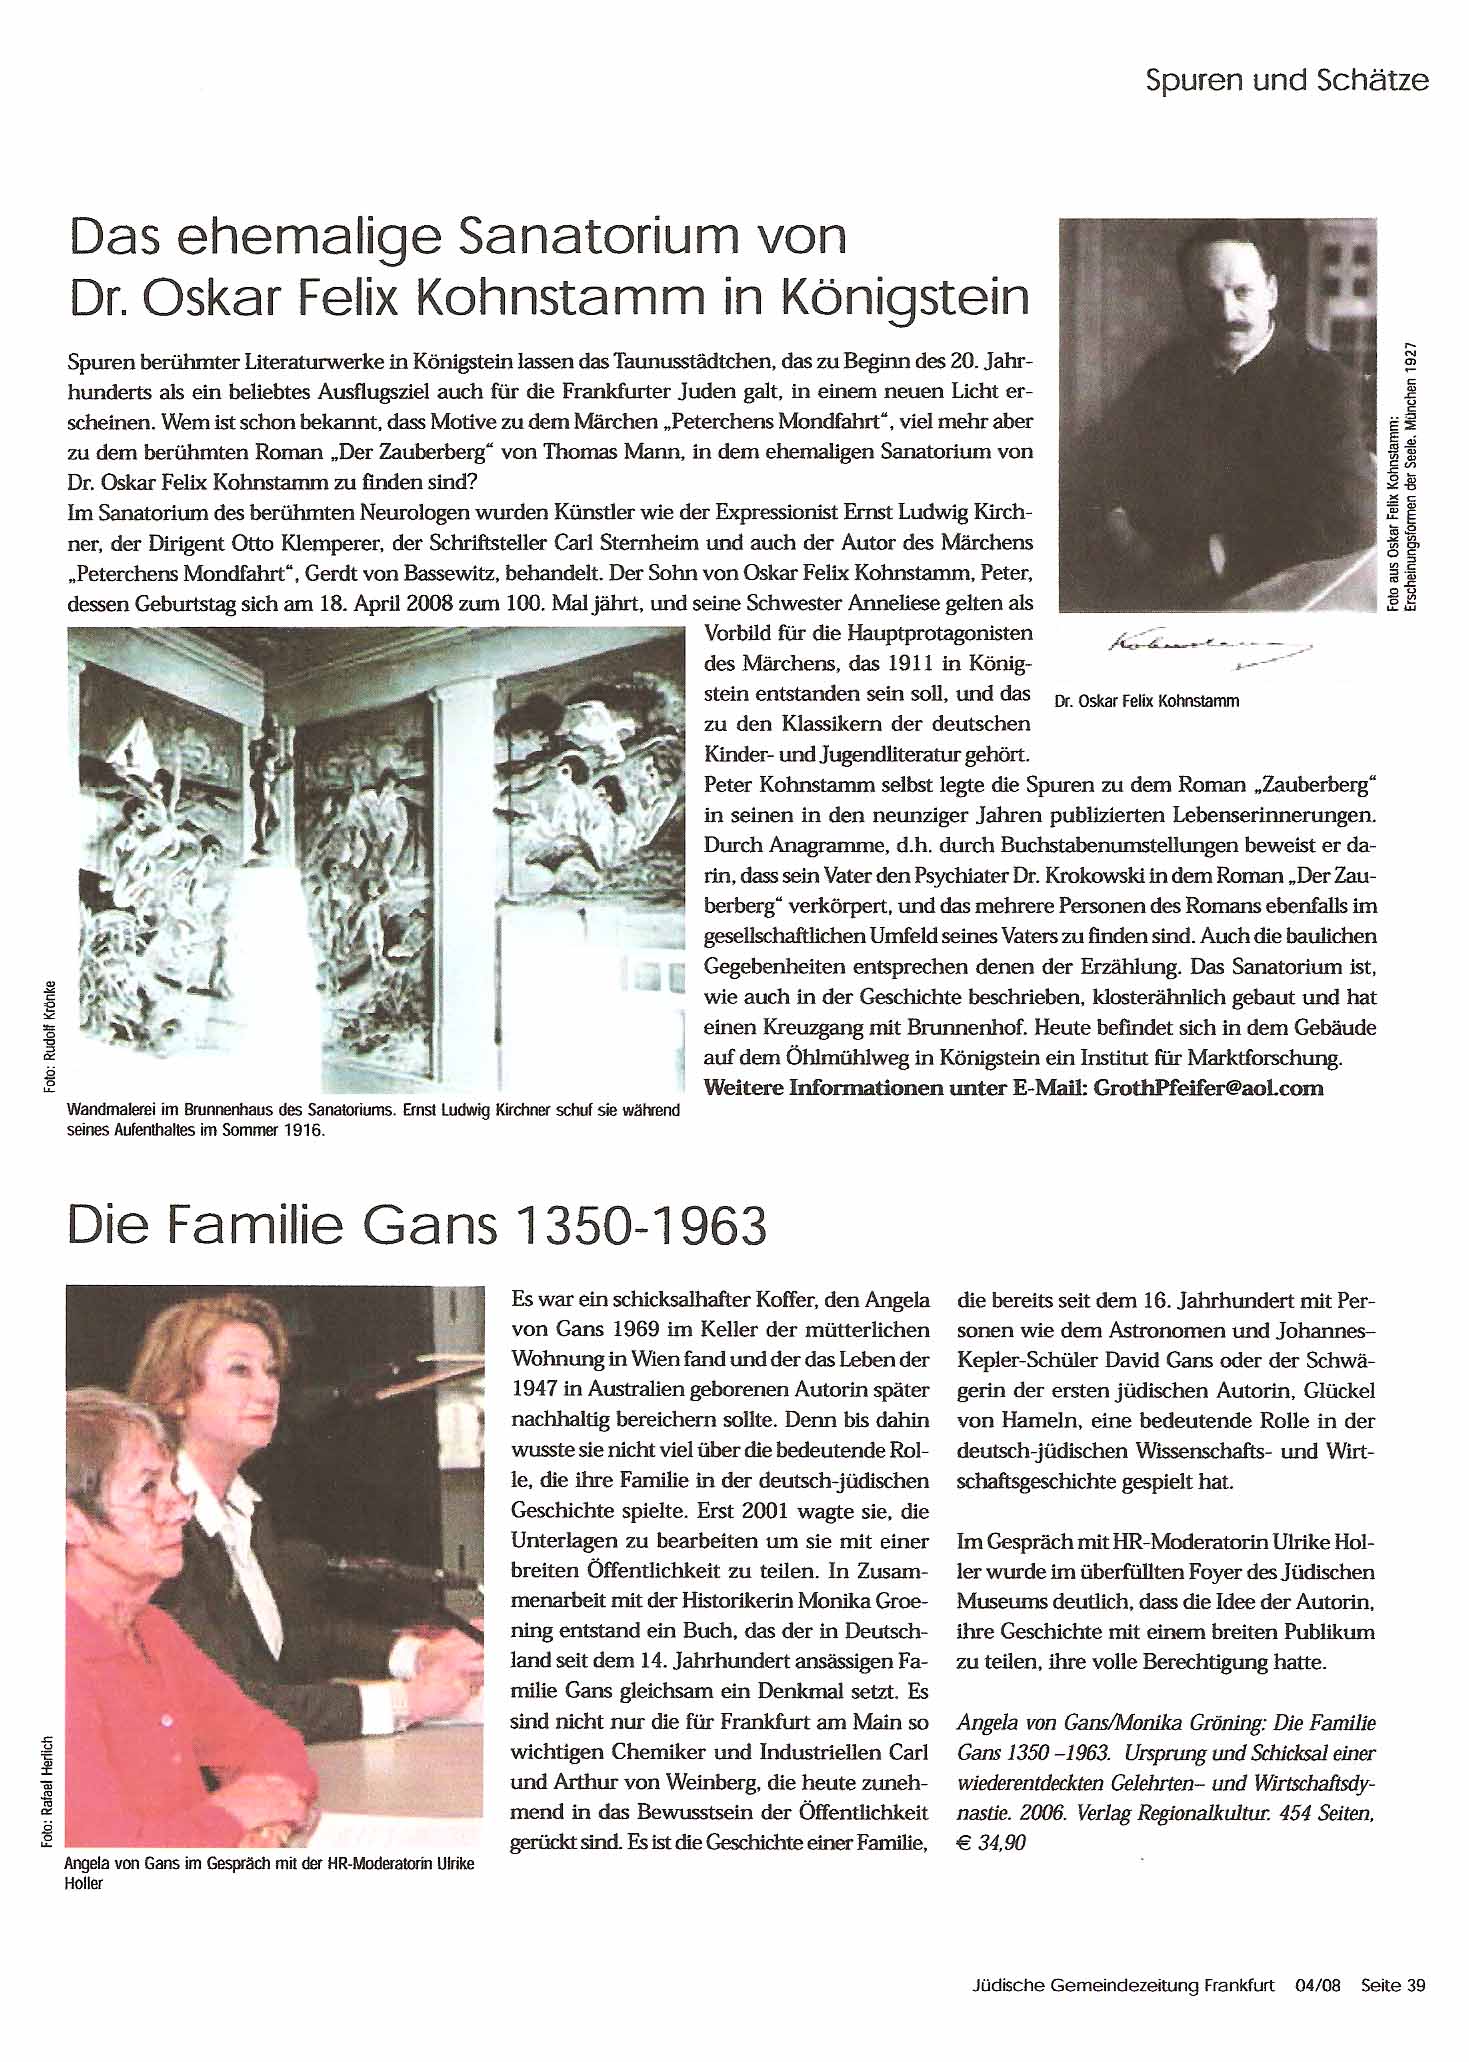 Jued. Gemeindezeitung Ffm S. 39